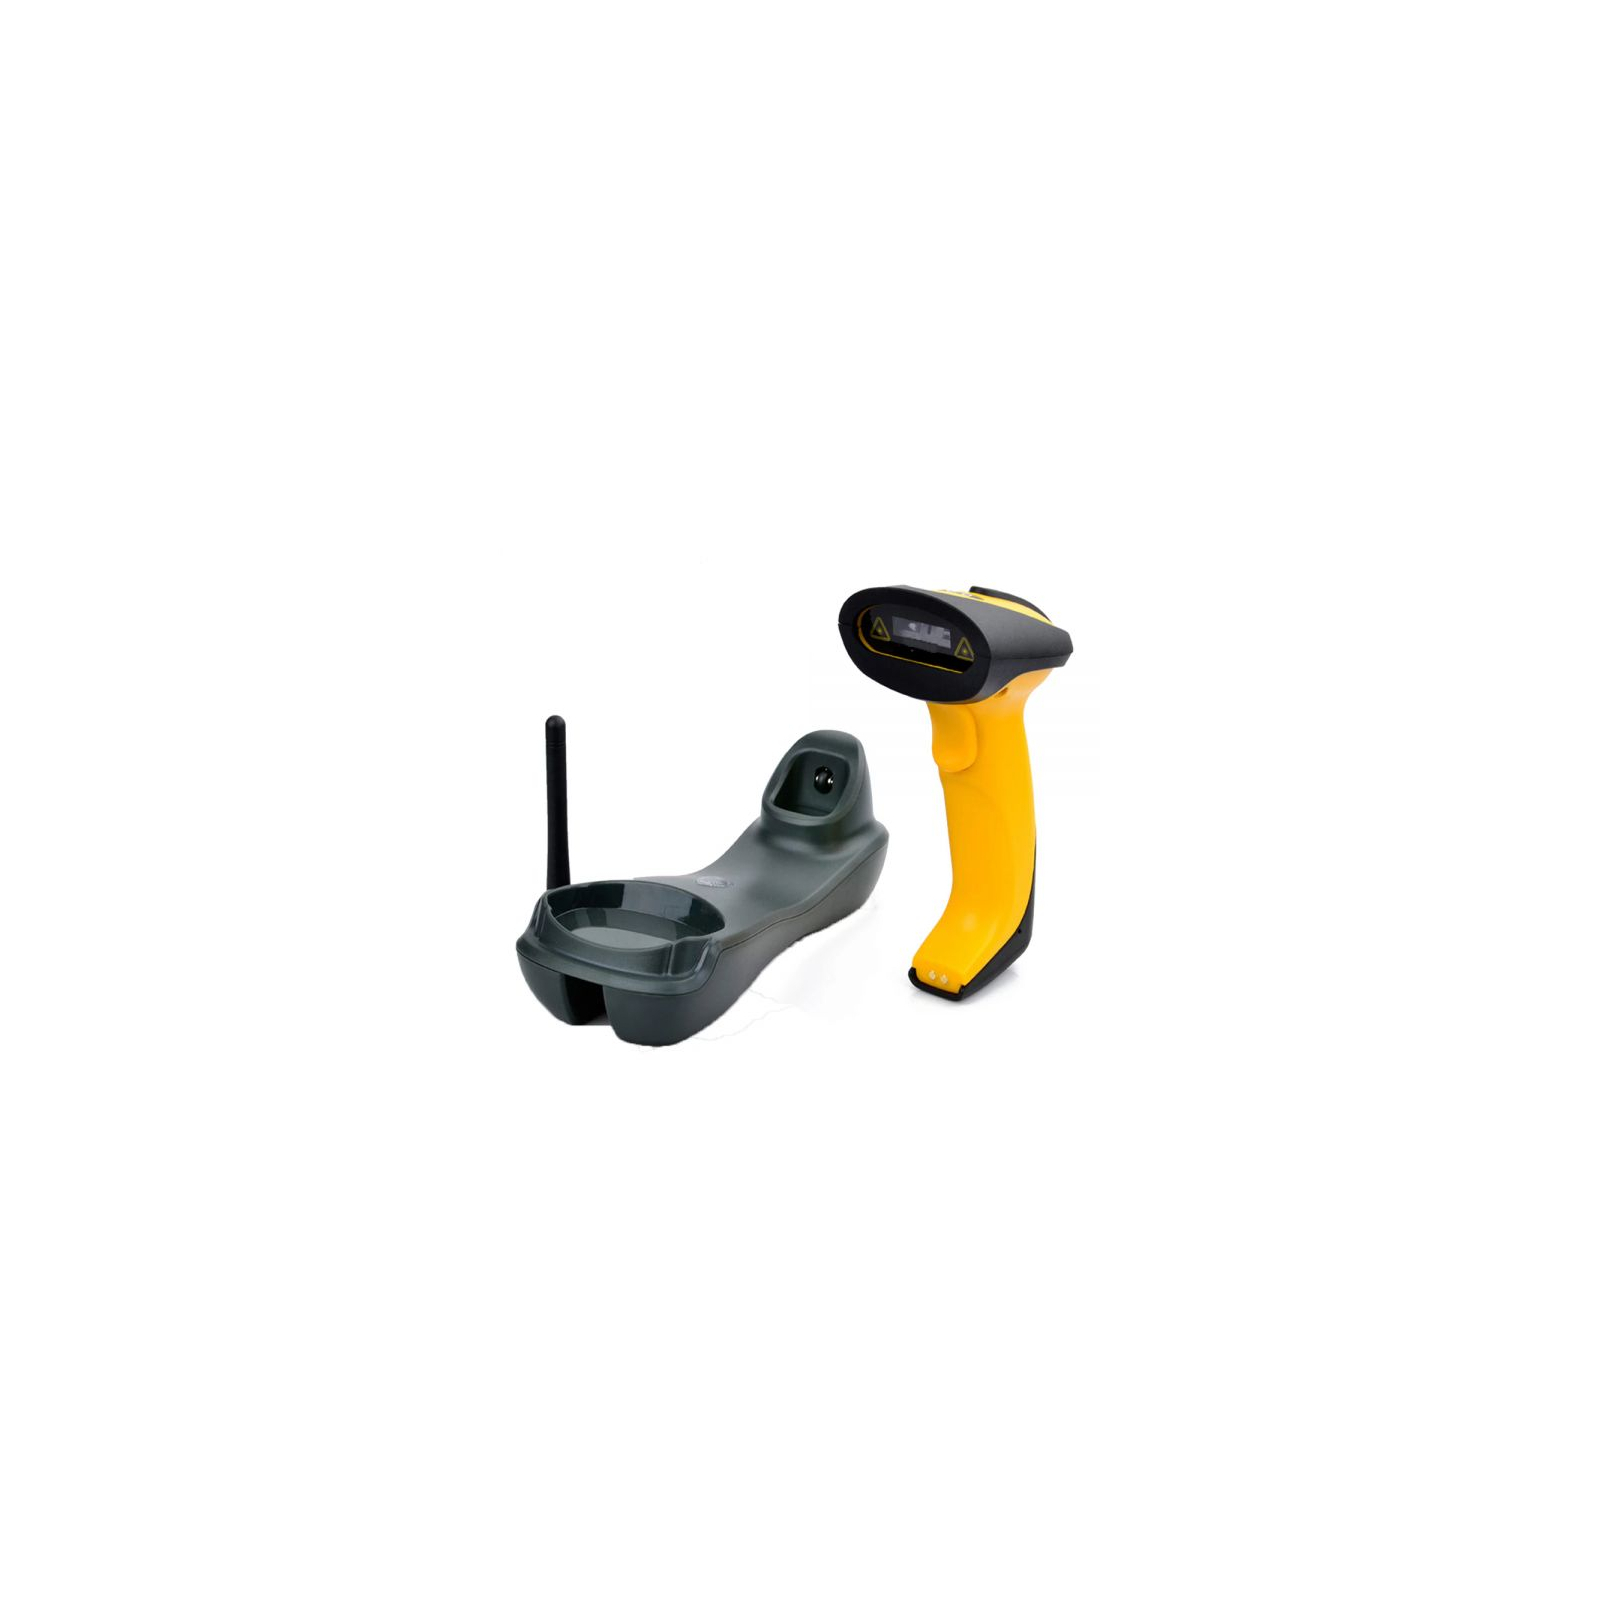 Сканер штрих-кода UKRMARK EV-W2503 2D, 433MHz, USB, IP64, stand, black/yellow (900769)